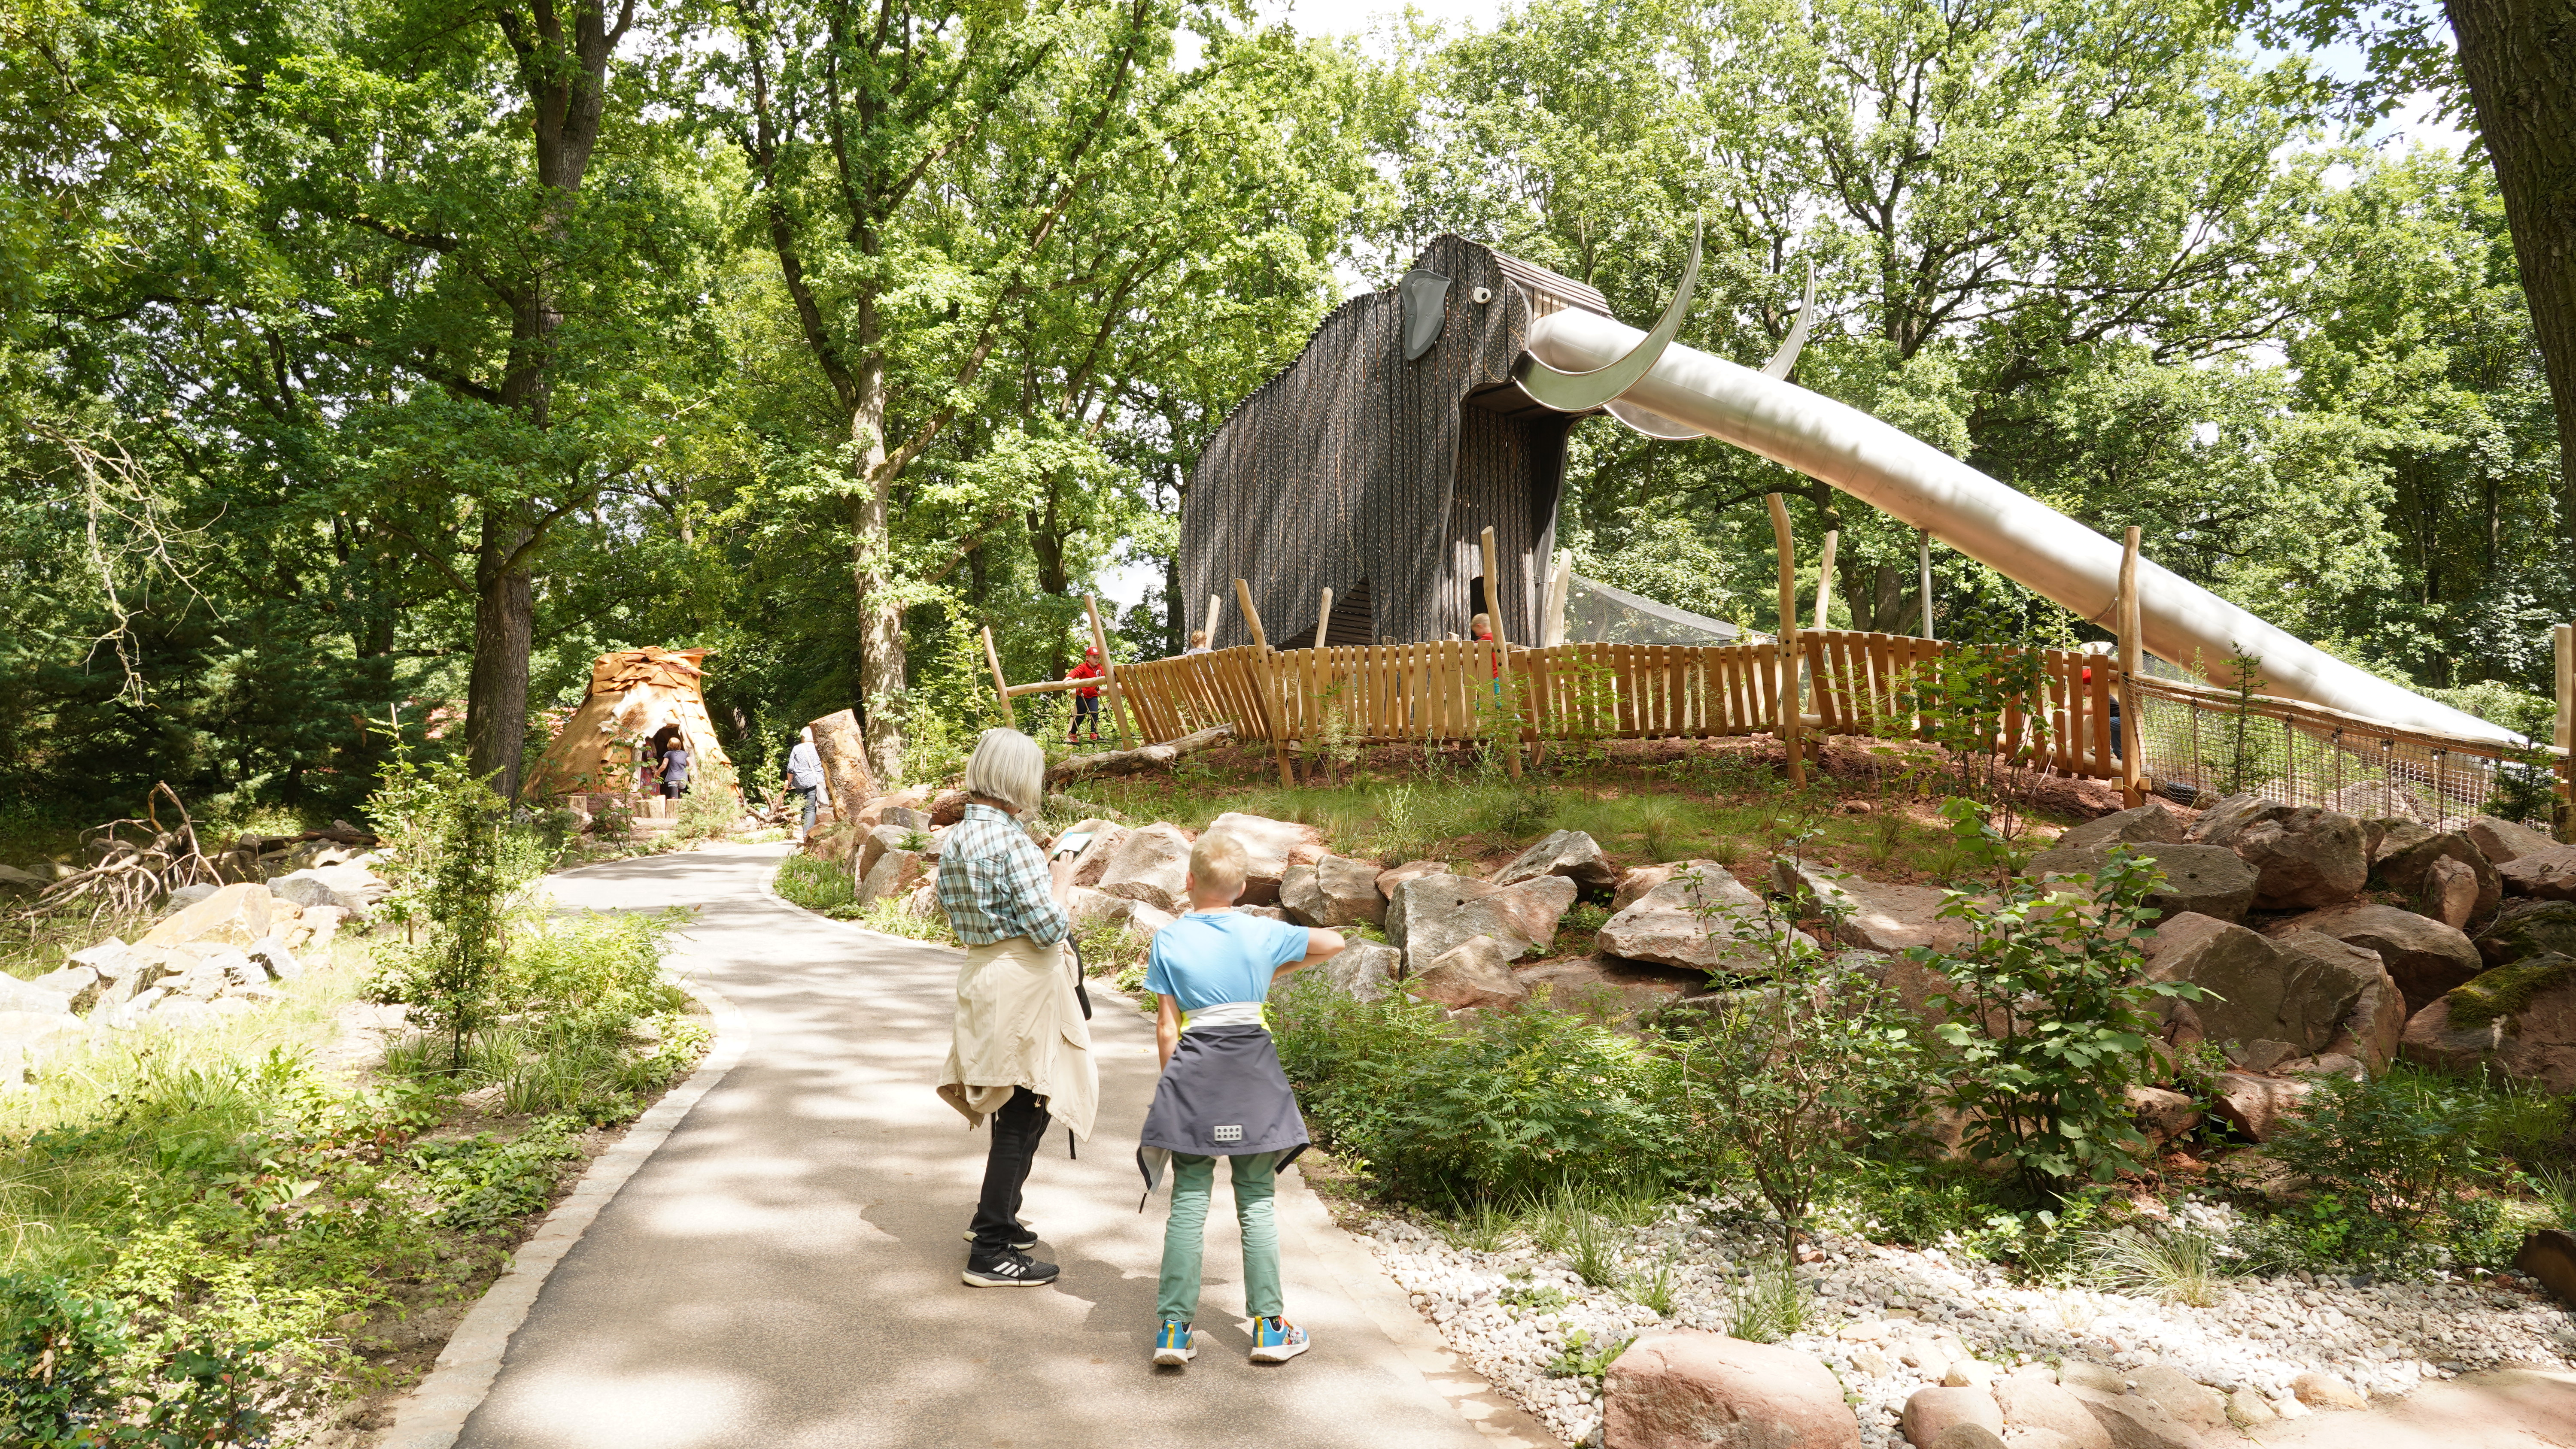 Am 15. Juli wurde der Eiszeitspielplatz im Chemnitzer Tierpark pünktlich zum Ferienbeginn an die jüngsten Gäste übergeben. Über dem rund 1.500 Quadratmeter großen Gelände thront die 13 Meter lange Mammutrutsche.